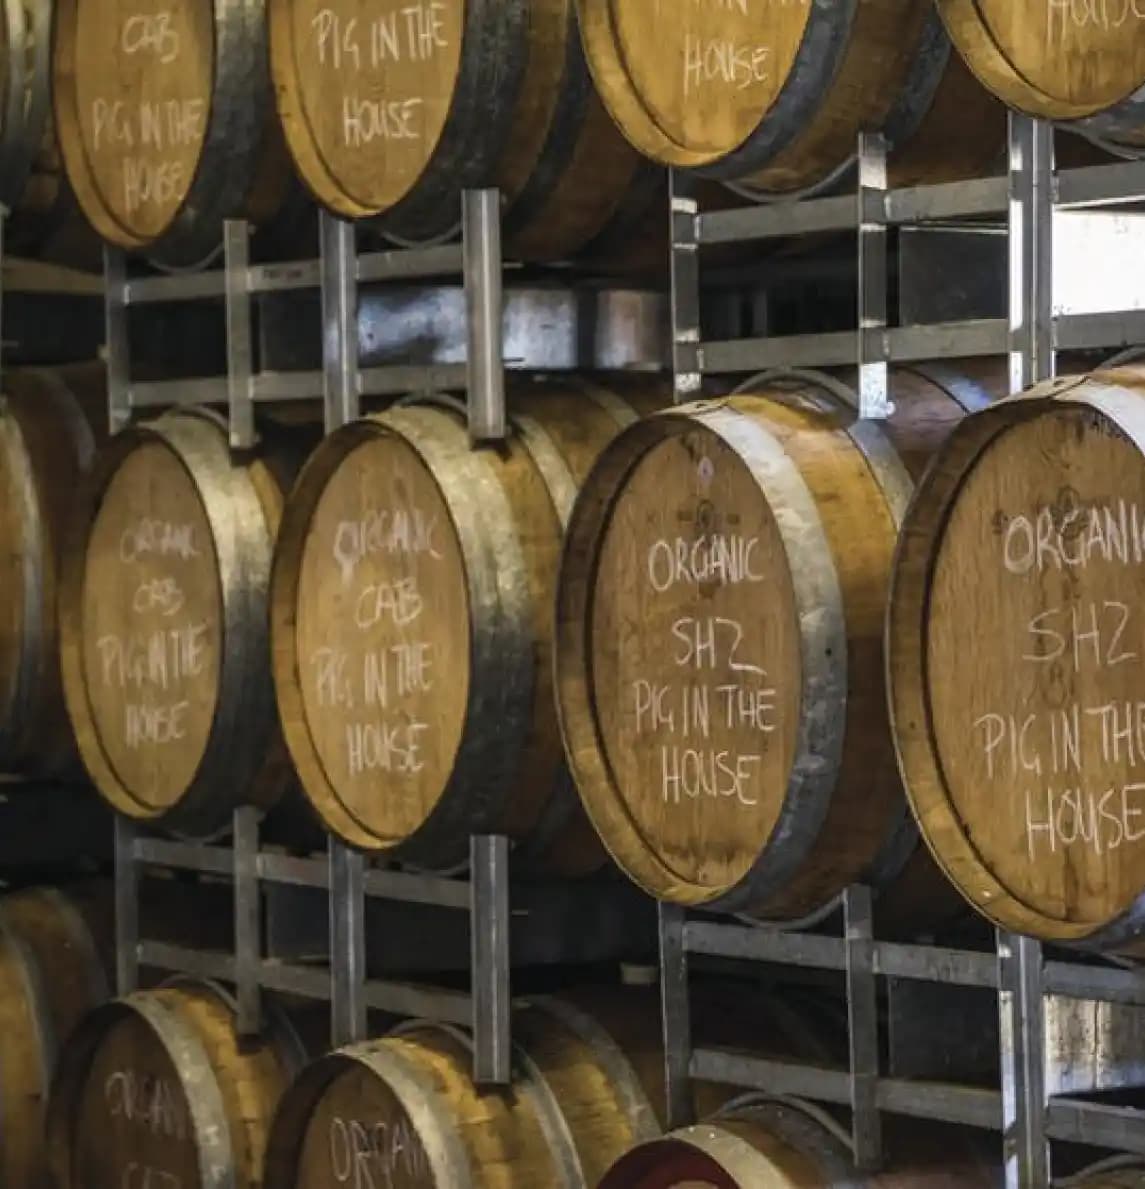 Windowrie Wines in Barrels